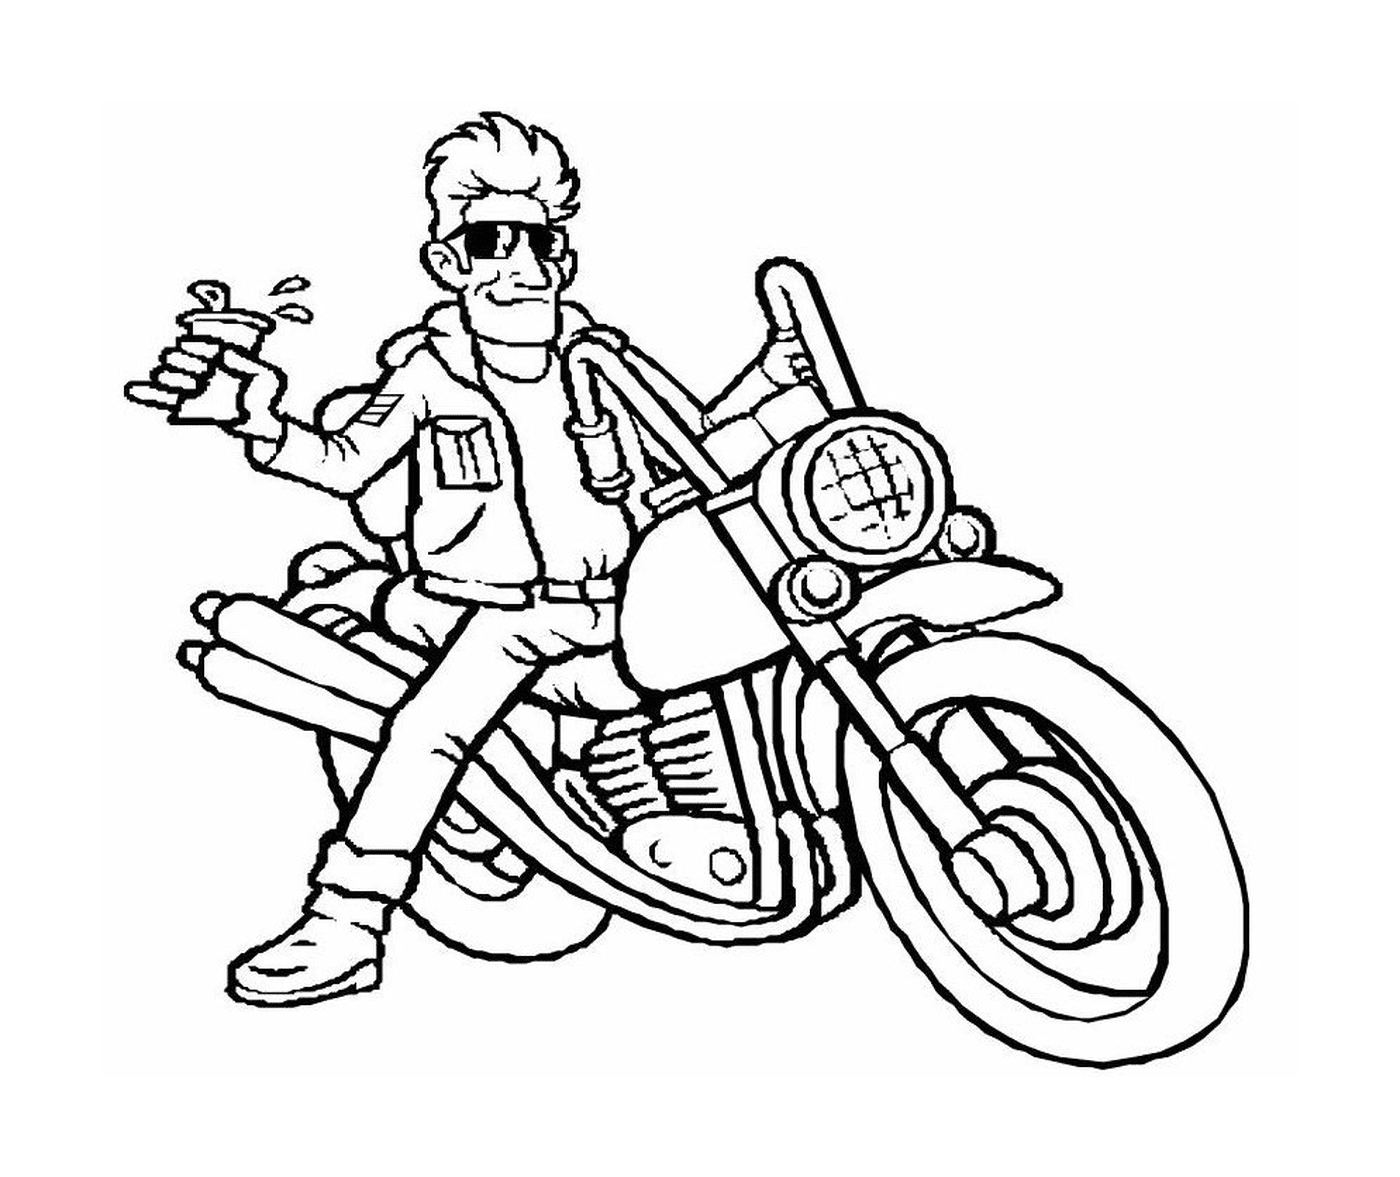  Человек, сидящий в задней части мотоцикла 